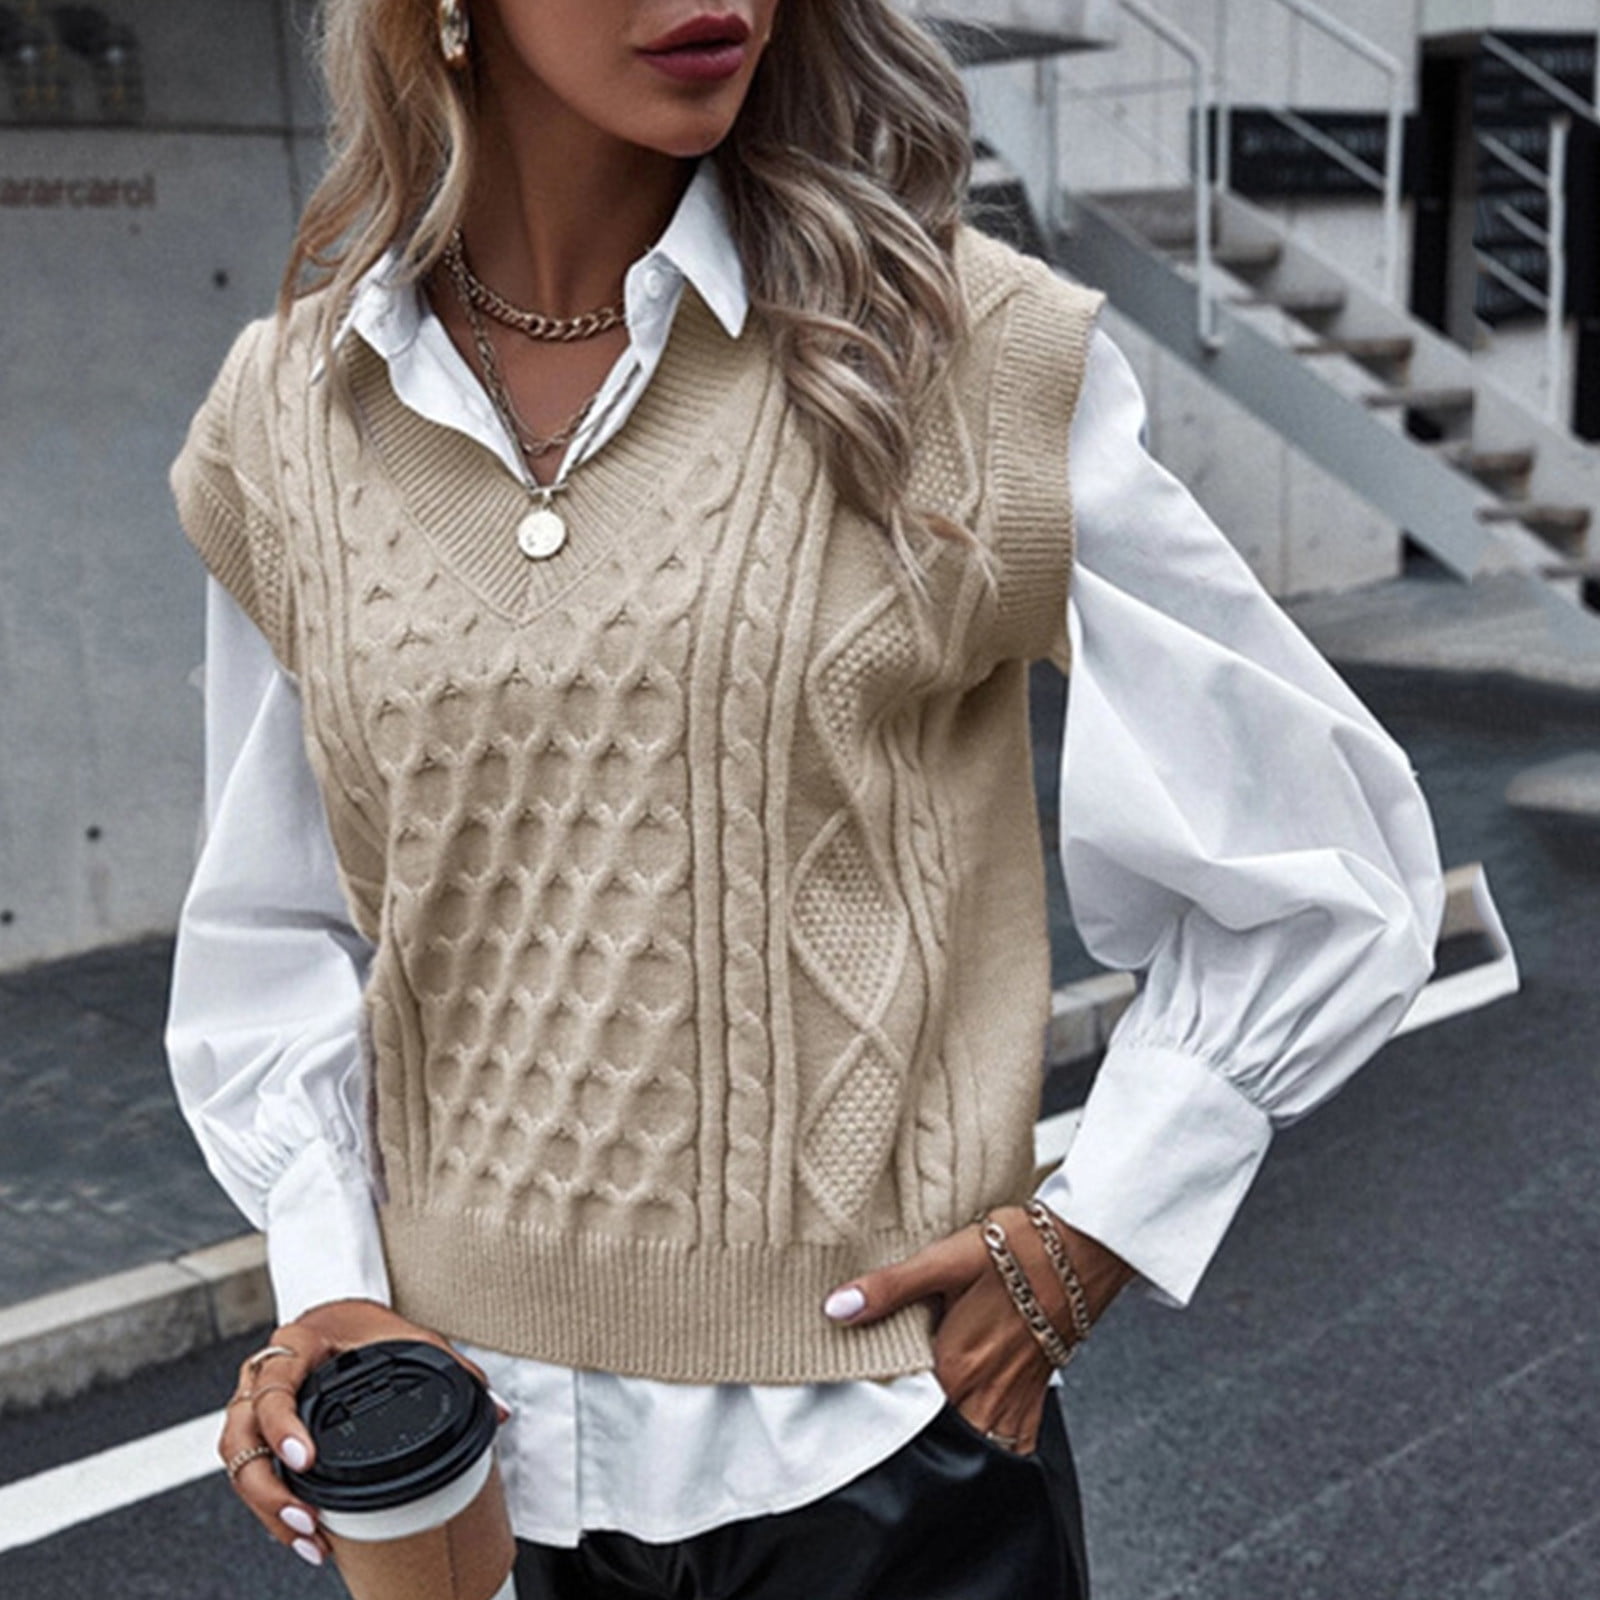 Forestyashe Women'S Preppy Style Knitwear Tank Top Sleeveless V-Neck  Vintage Sweater Vest 